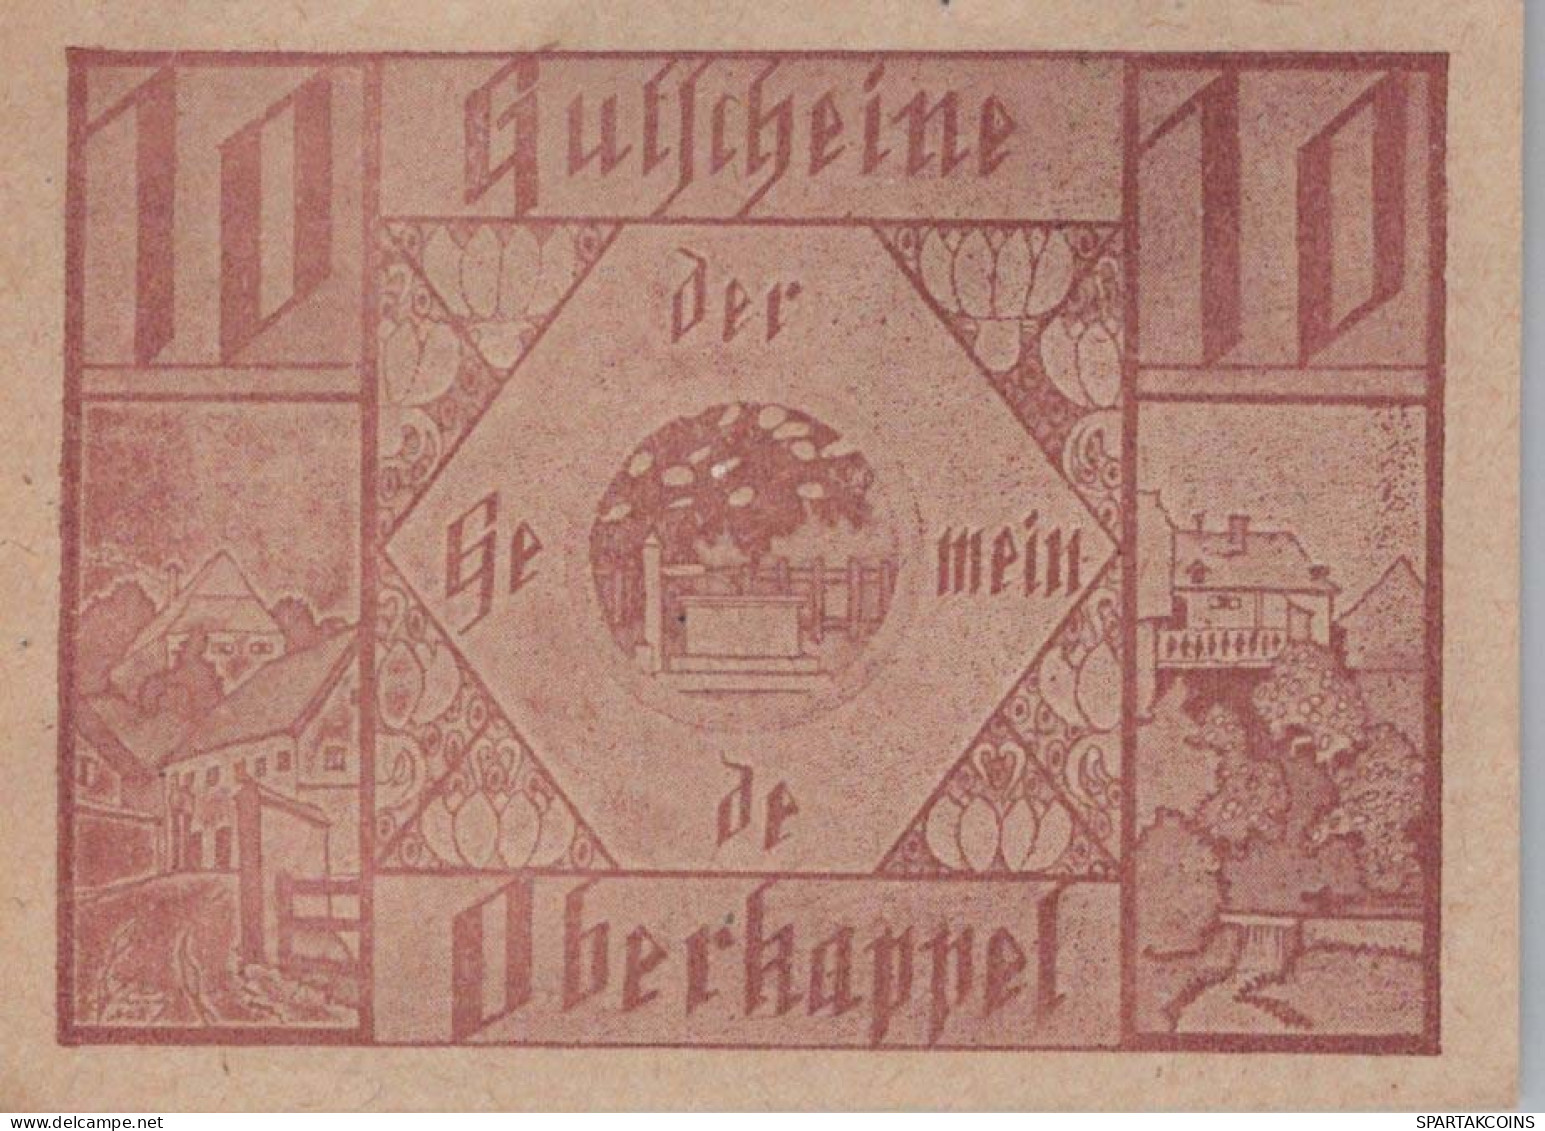 10 HELLER 1920 Stadt OBERKAPPEL Oberösterreich Österreich Notgeld #PE500 - Lokale Ausgaben